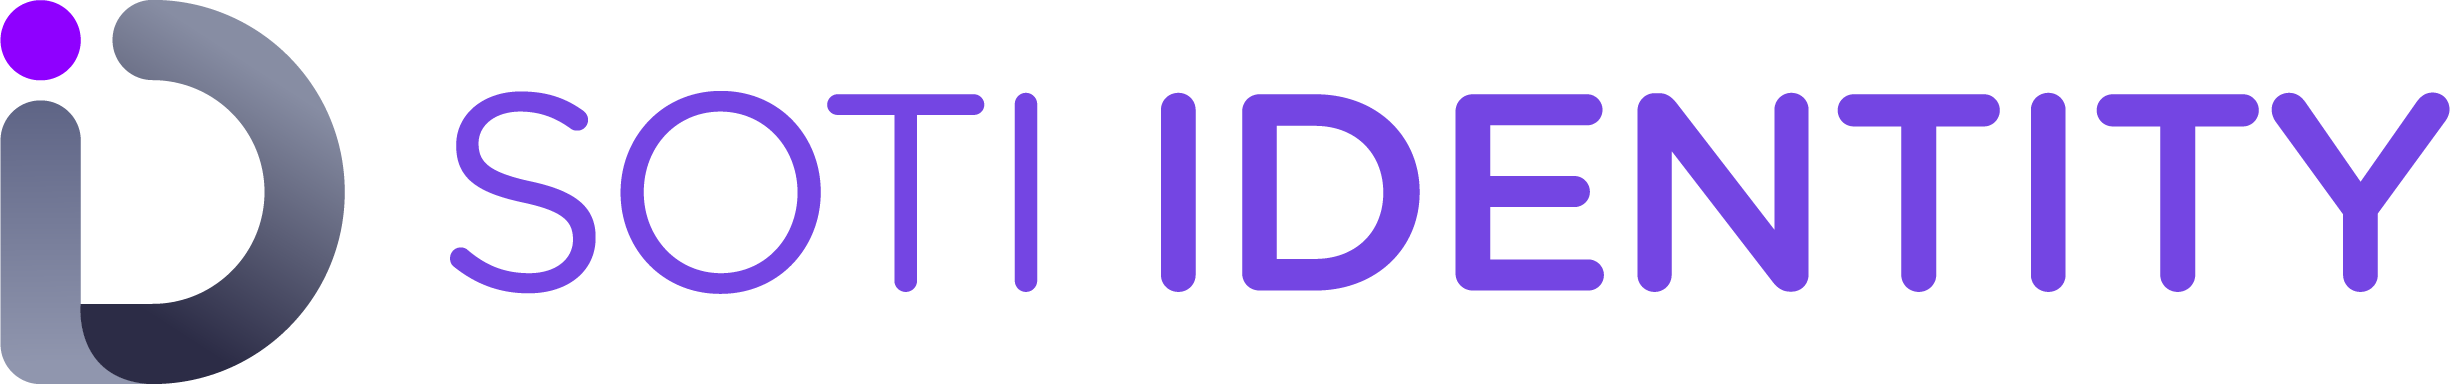 SOTI Identity product logo